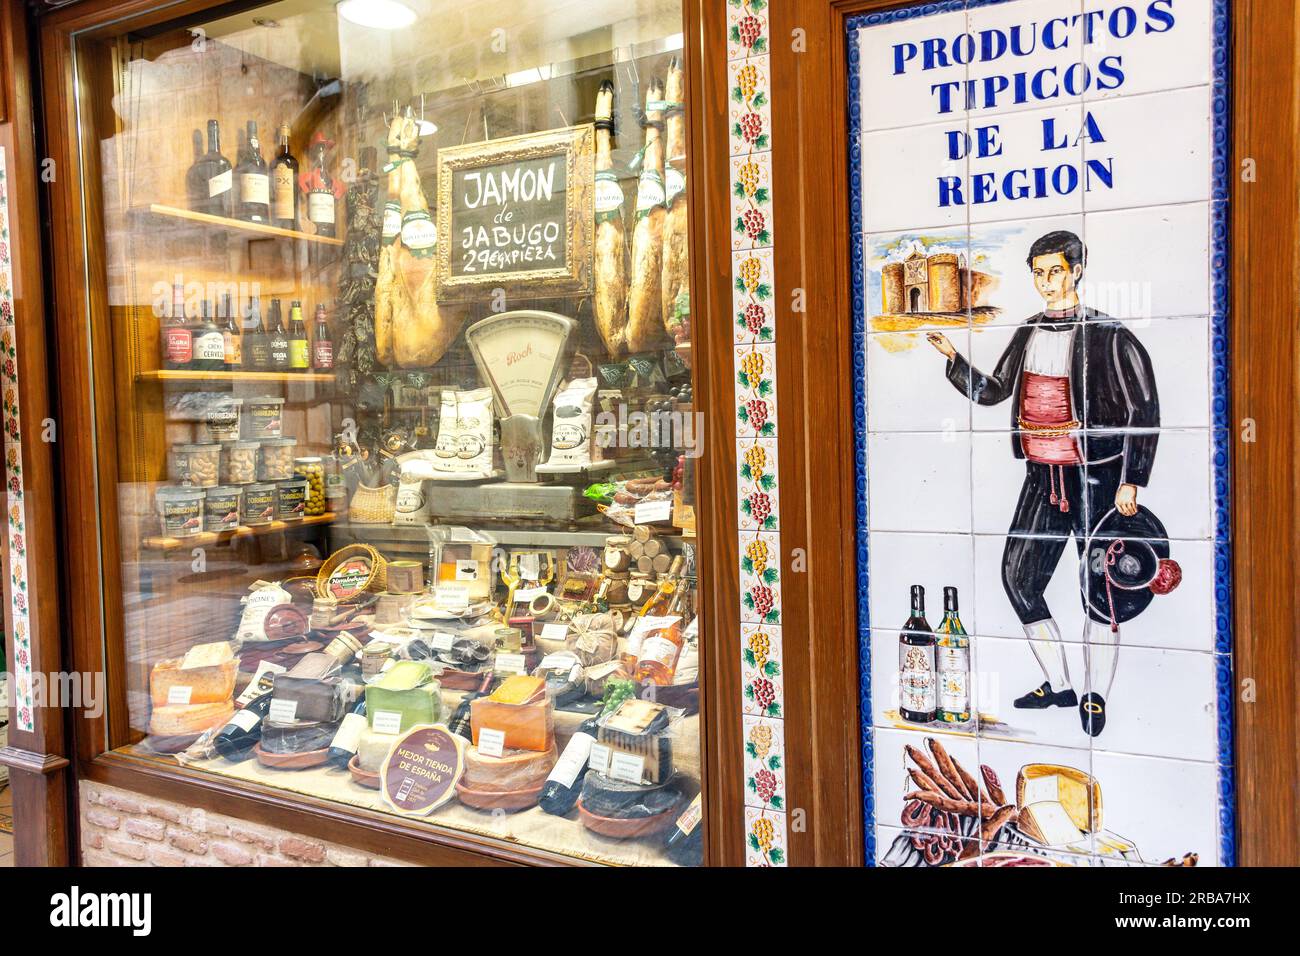 Productos Tipicos de la Region (cuisine régionale typique) boutique, Calle Comercio, Tolède, Castilla–la Mancha, Royaume d'Espagne Banque D'Images